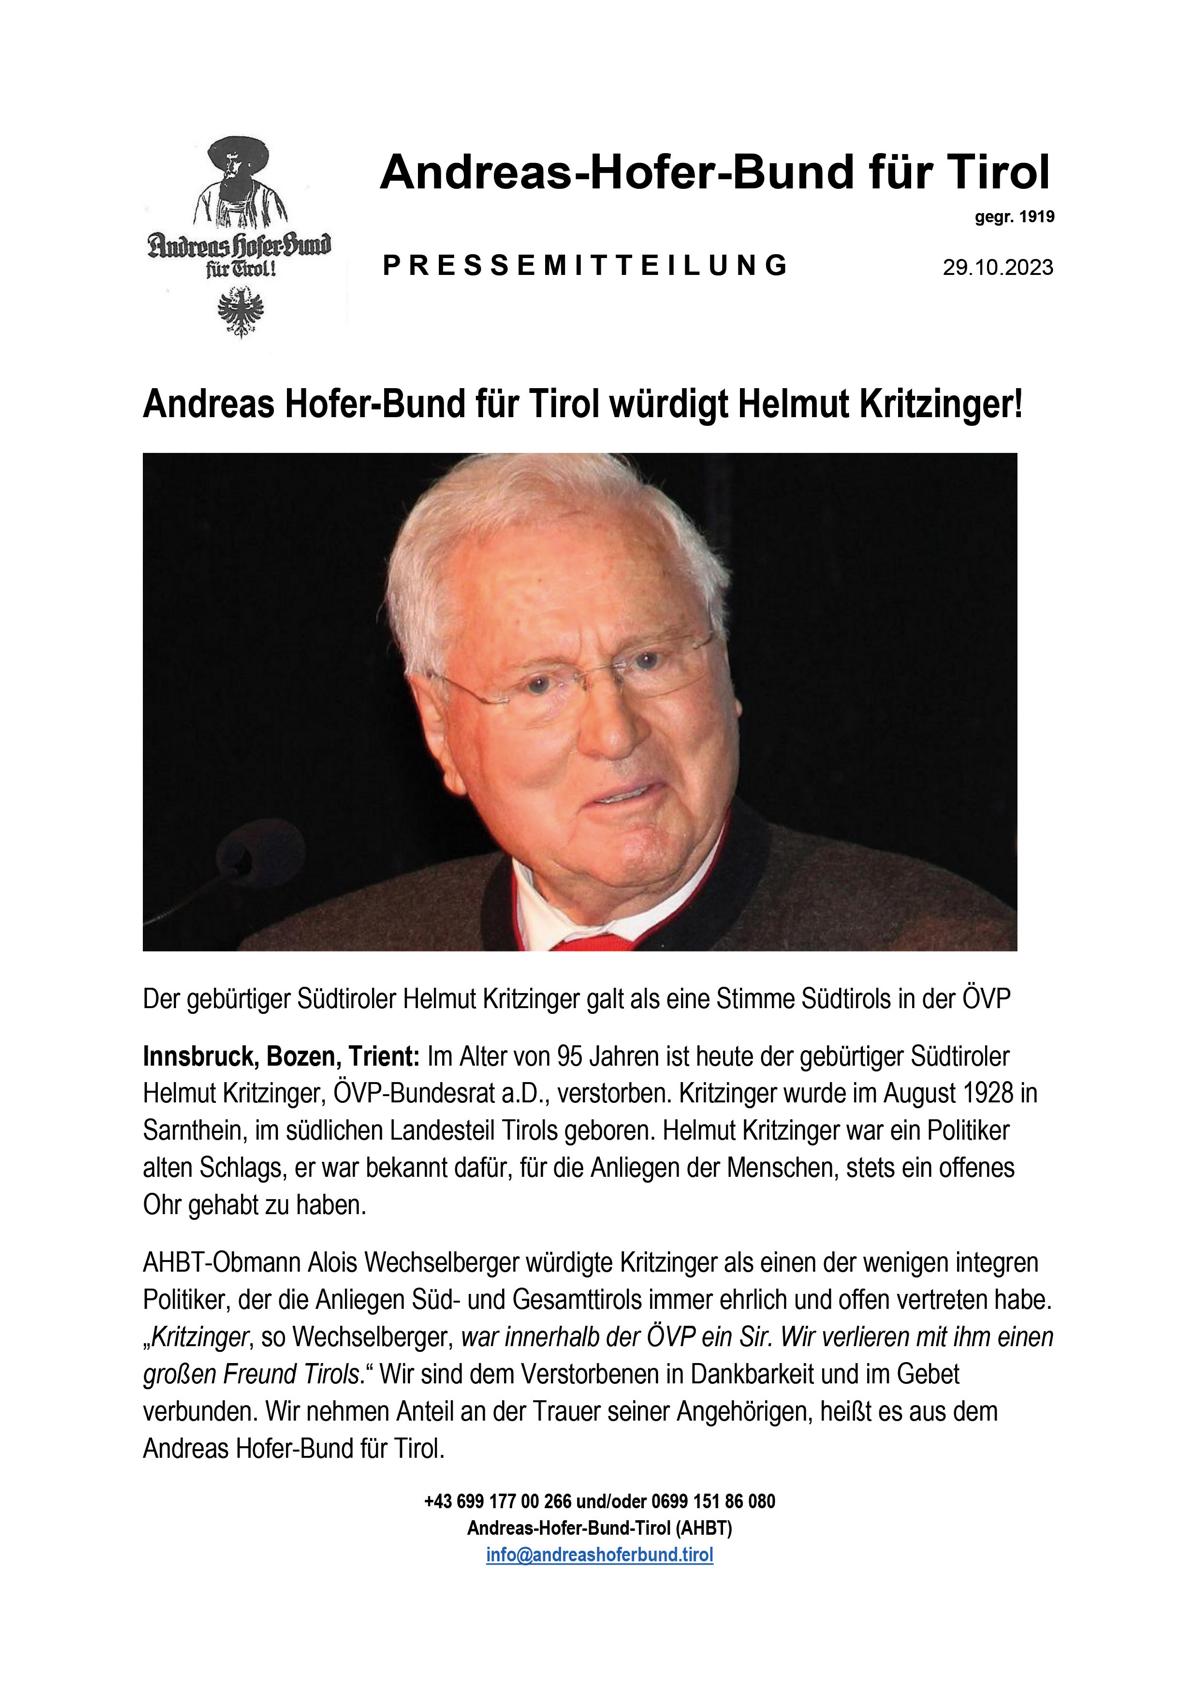 Andreas Hofer-Bund für Tirol würdigt Helmut Kritzinger!